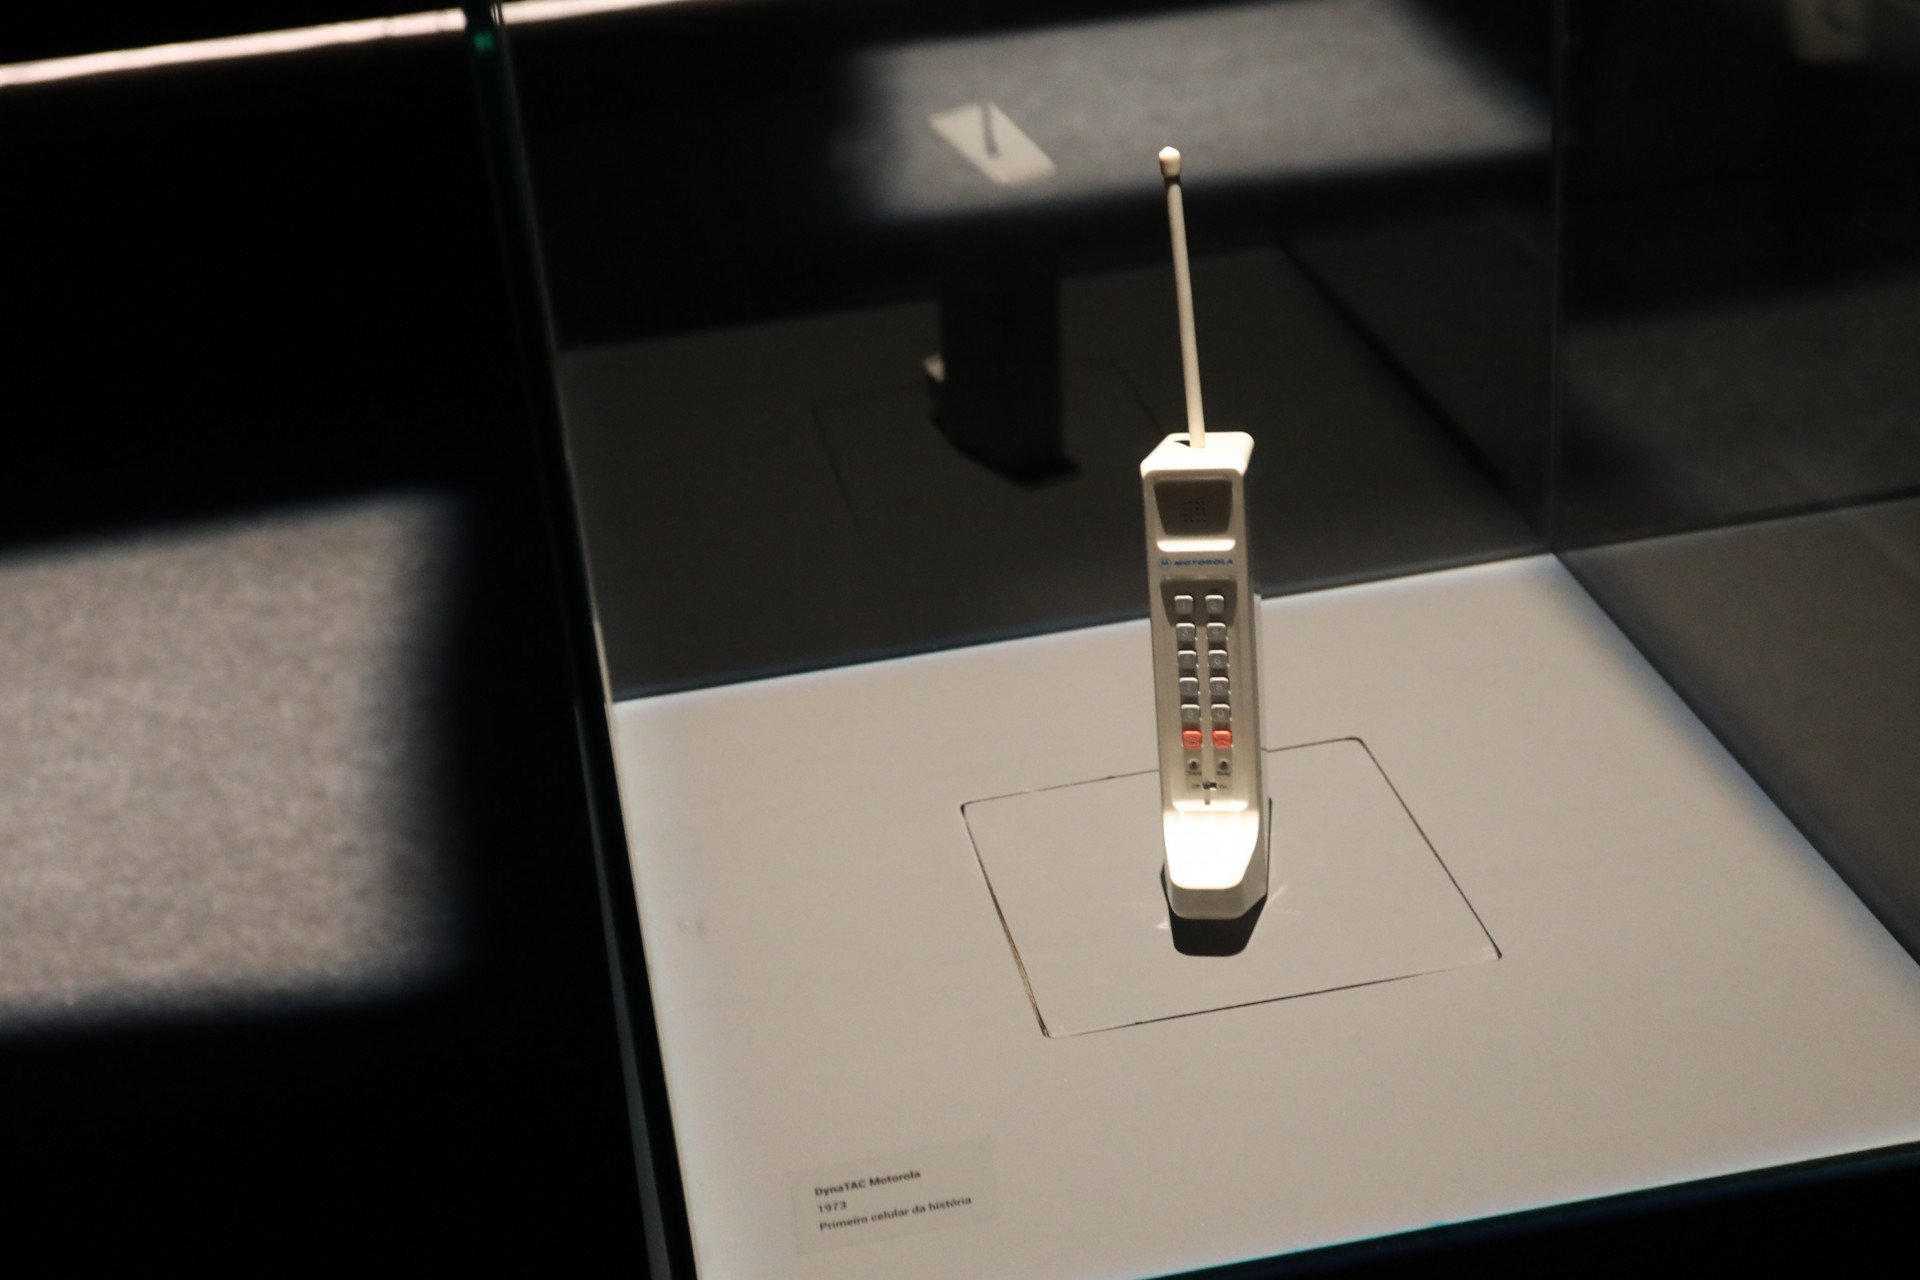 Exposição propõe passeio pela história do celular nos 50 anos de